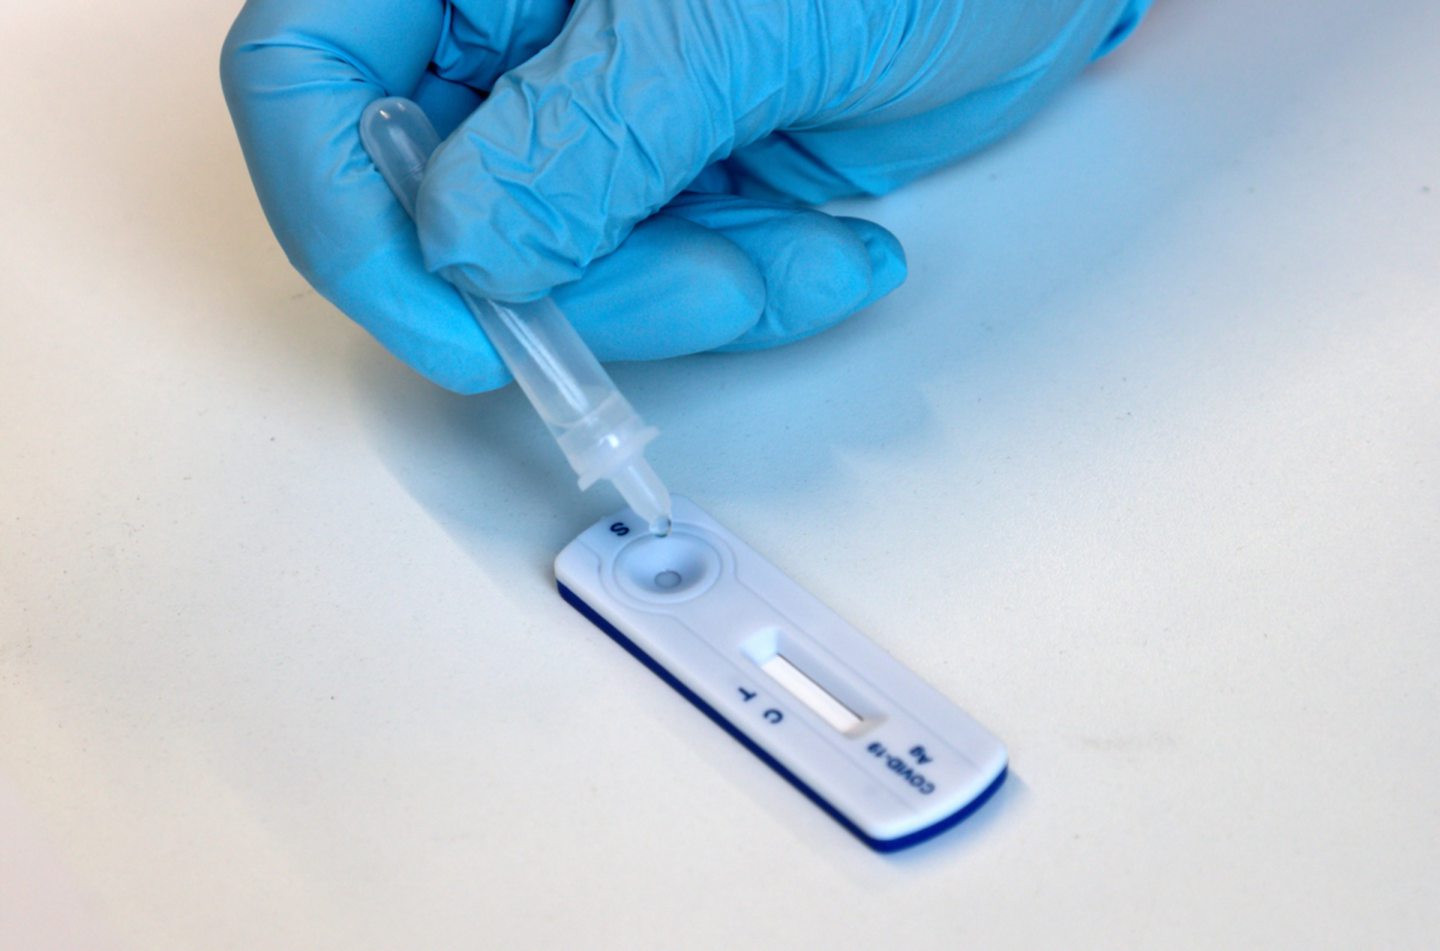 PCR testing kit